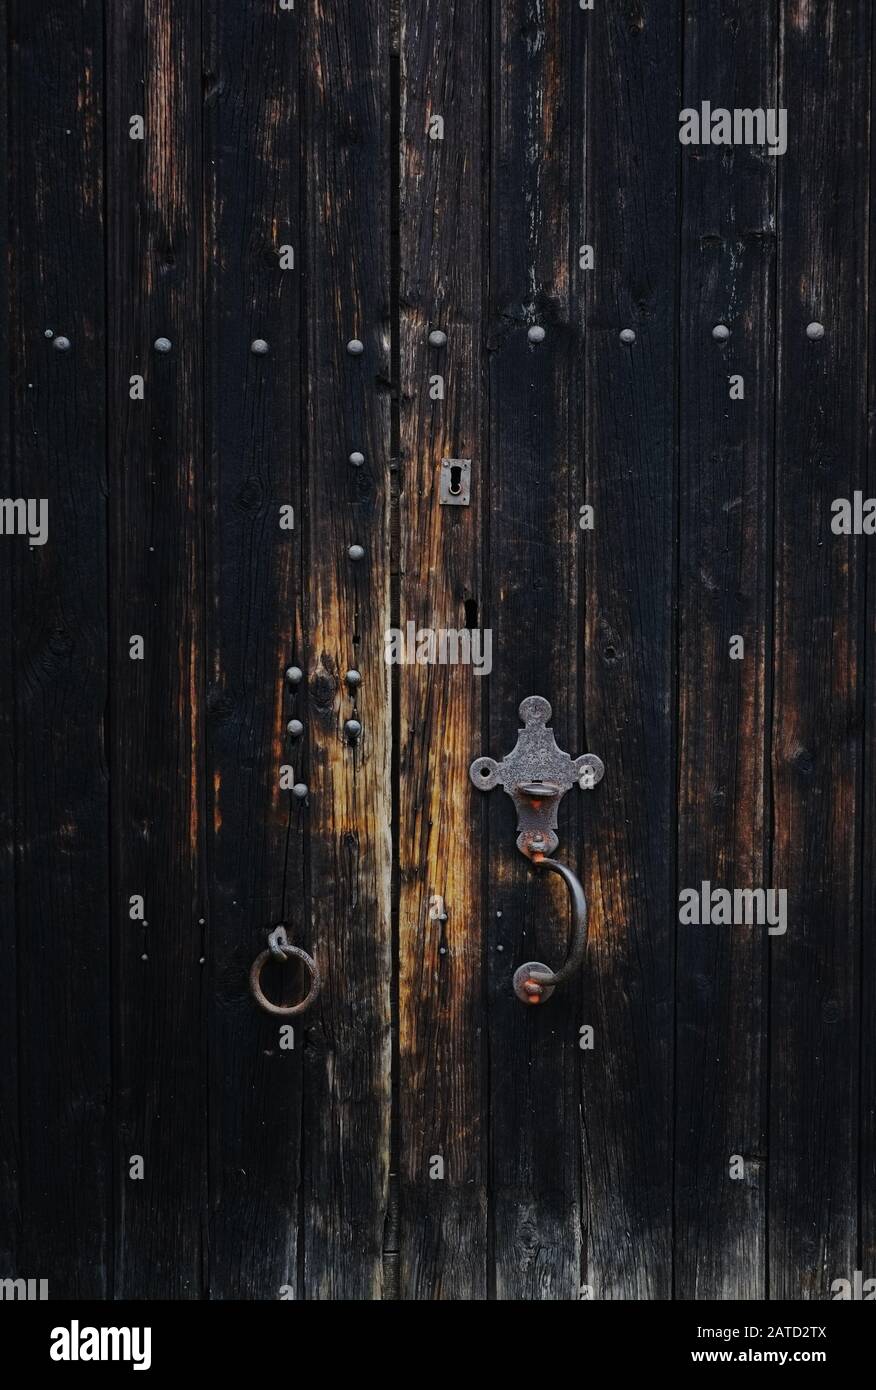 Una vecchia porta in legno slattato annerito con perni in ferro, serratura e maniglia, piastra di taglio in ghisa. Legno biondo indossato vicino alle maniglie, dall'uso. Foto Stock